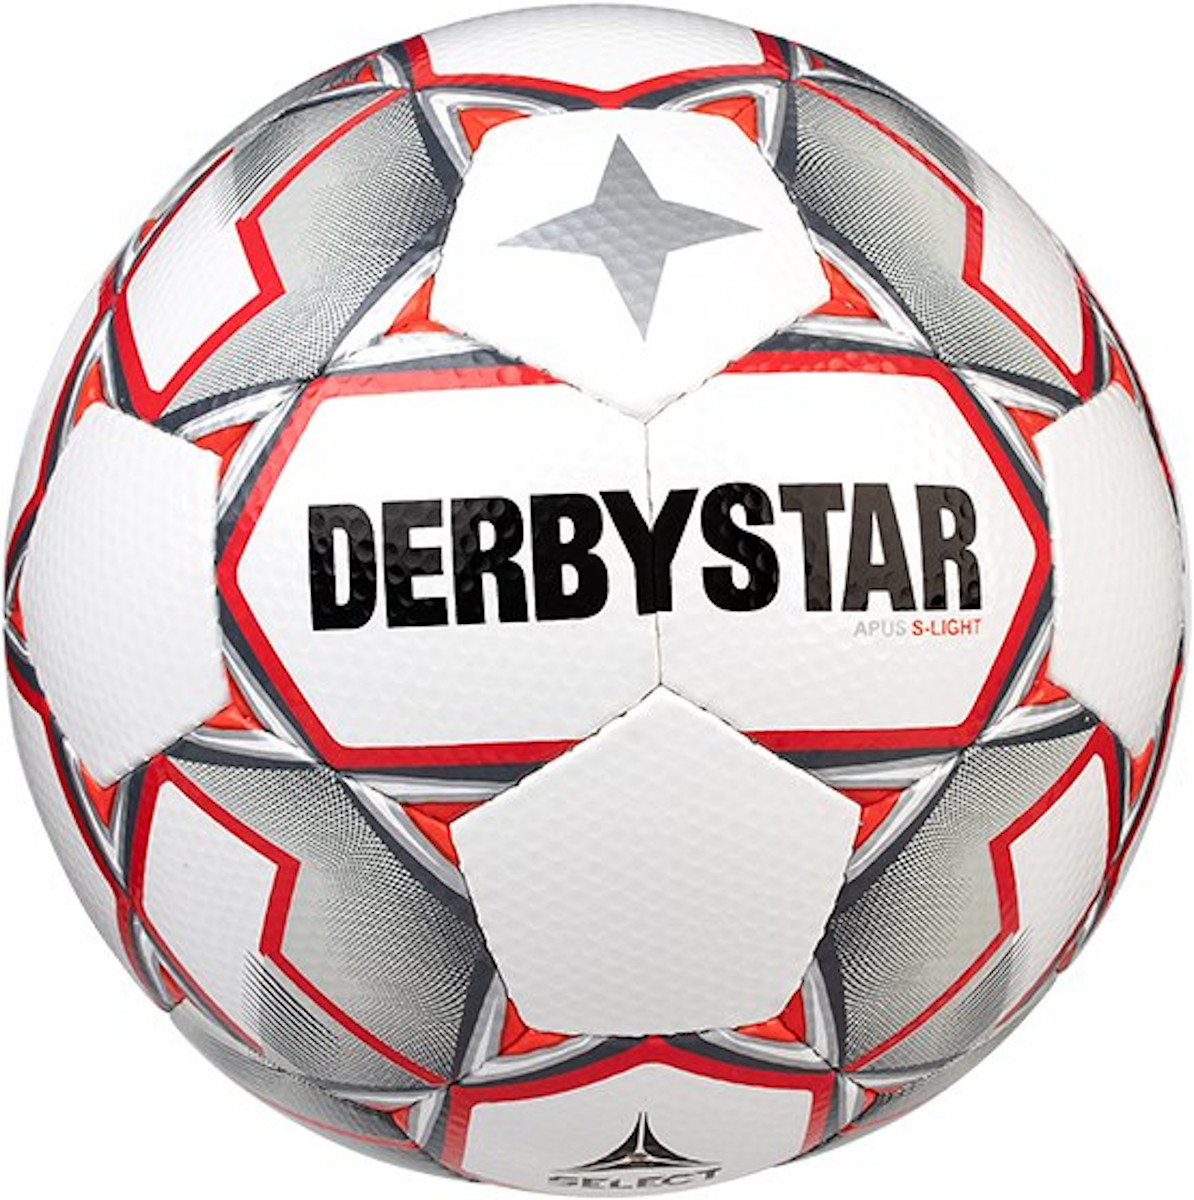 Minge Derbystar Apus S-Light v20 290 grams Lightball